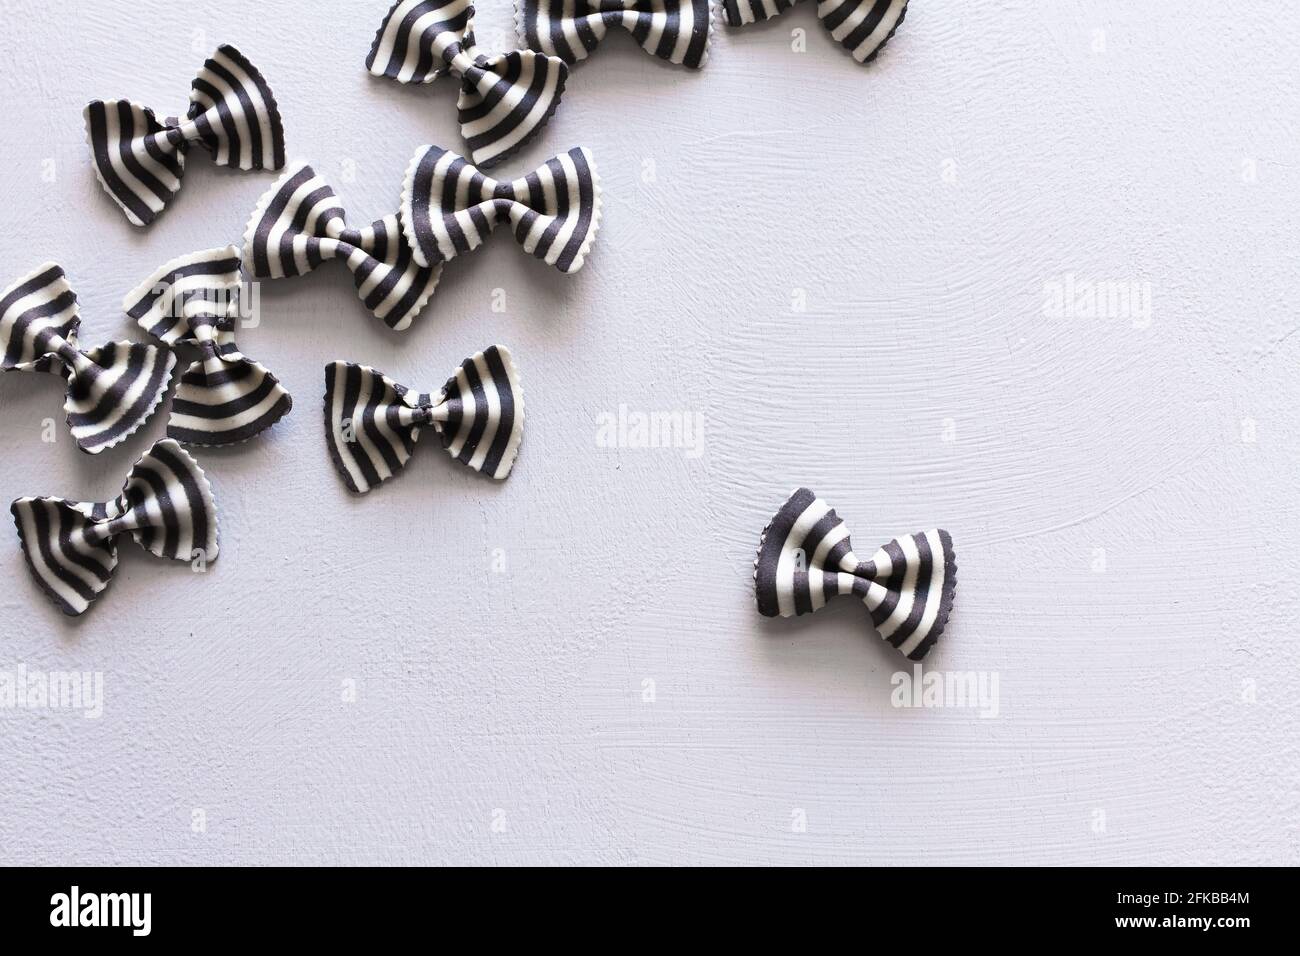 Black and white zebra farfalle pasta. Stock Photo